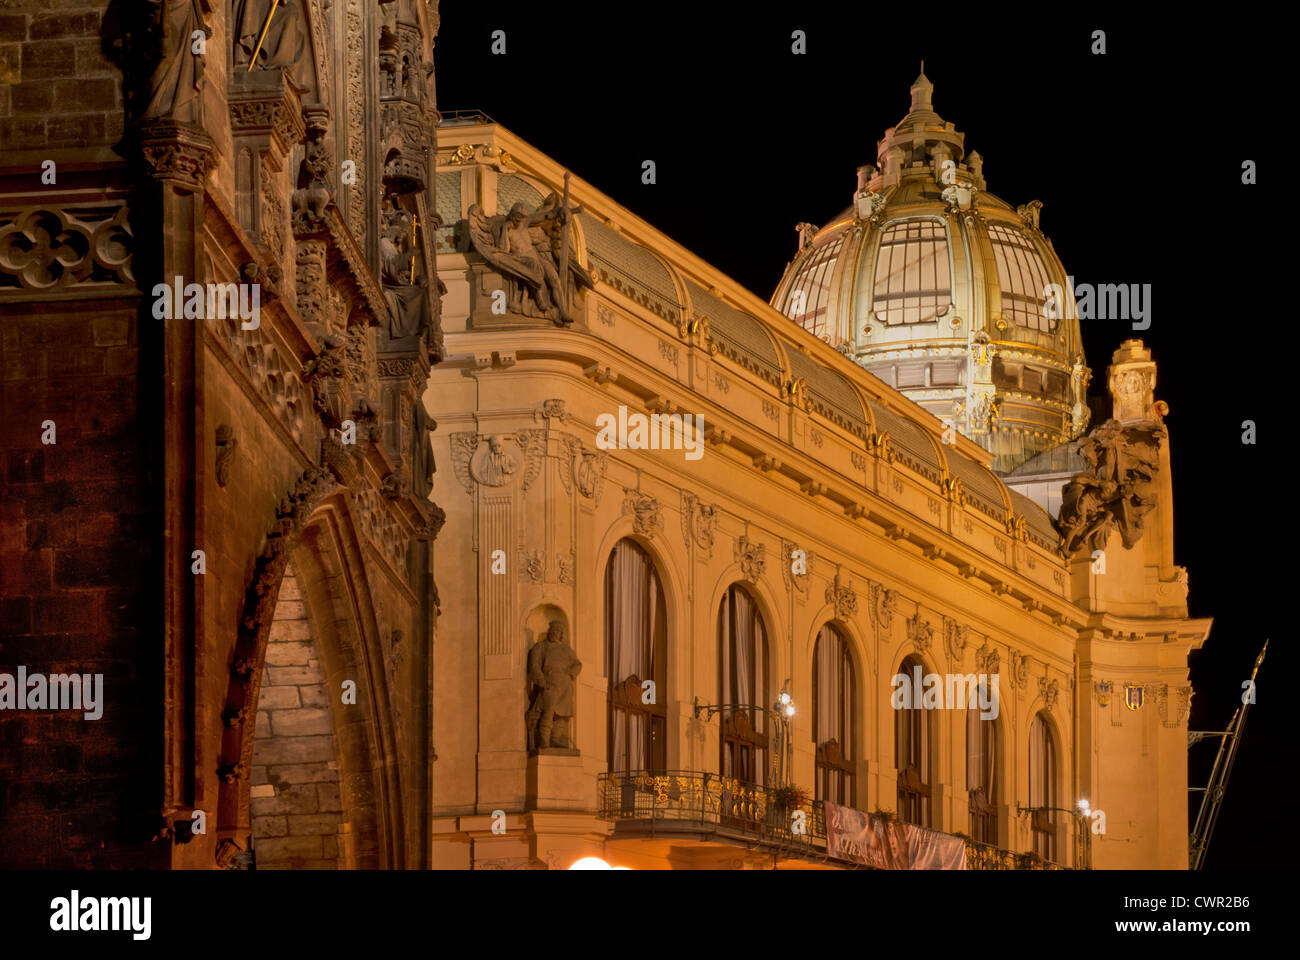 Praga - Casa Municipale Hall (Obecni Dum) e la torre di polvere e di notte - Stare Mesto, Centro Storico Foto Stock